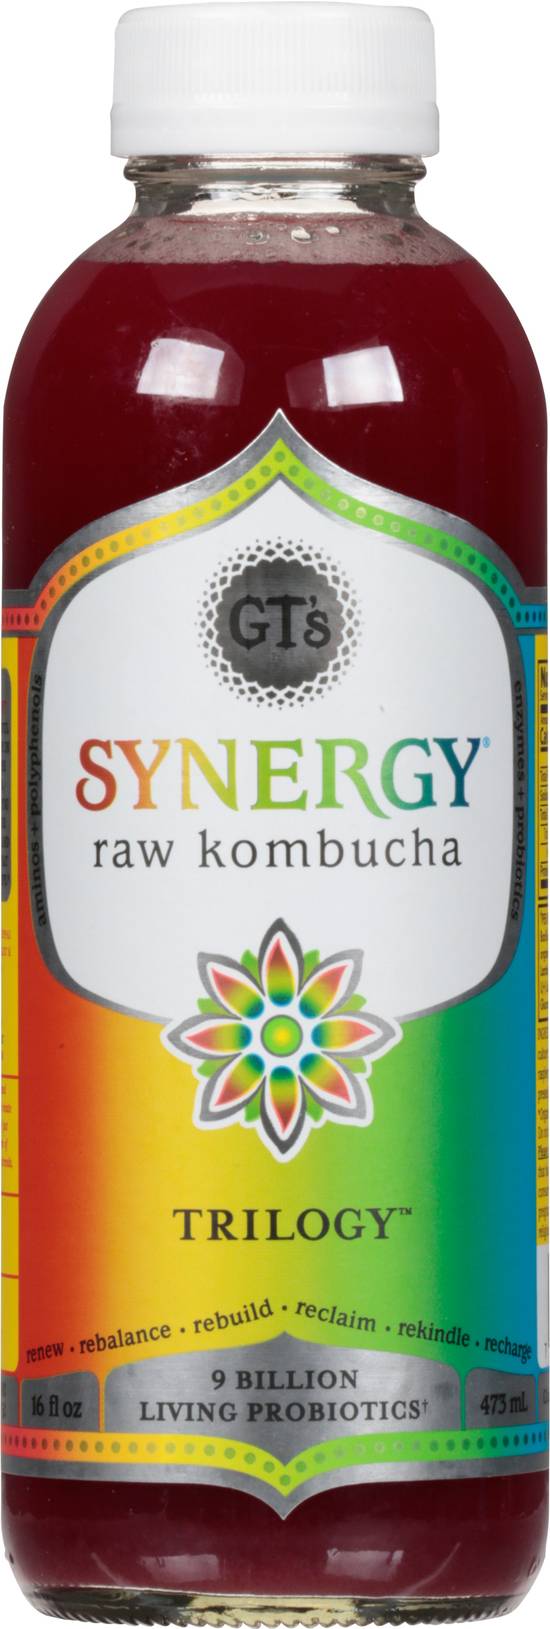 Gt's Synergy Raw Kombucha (16 fl oz) (trilogy)